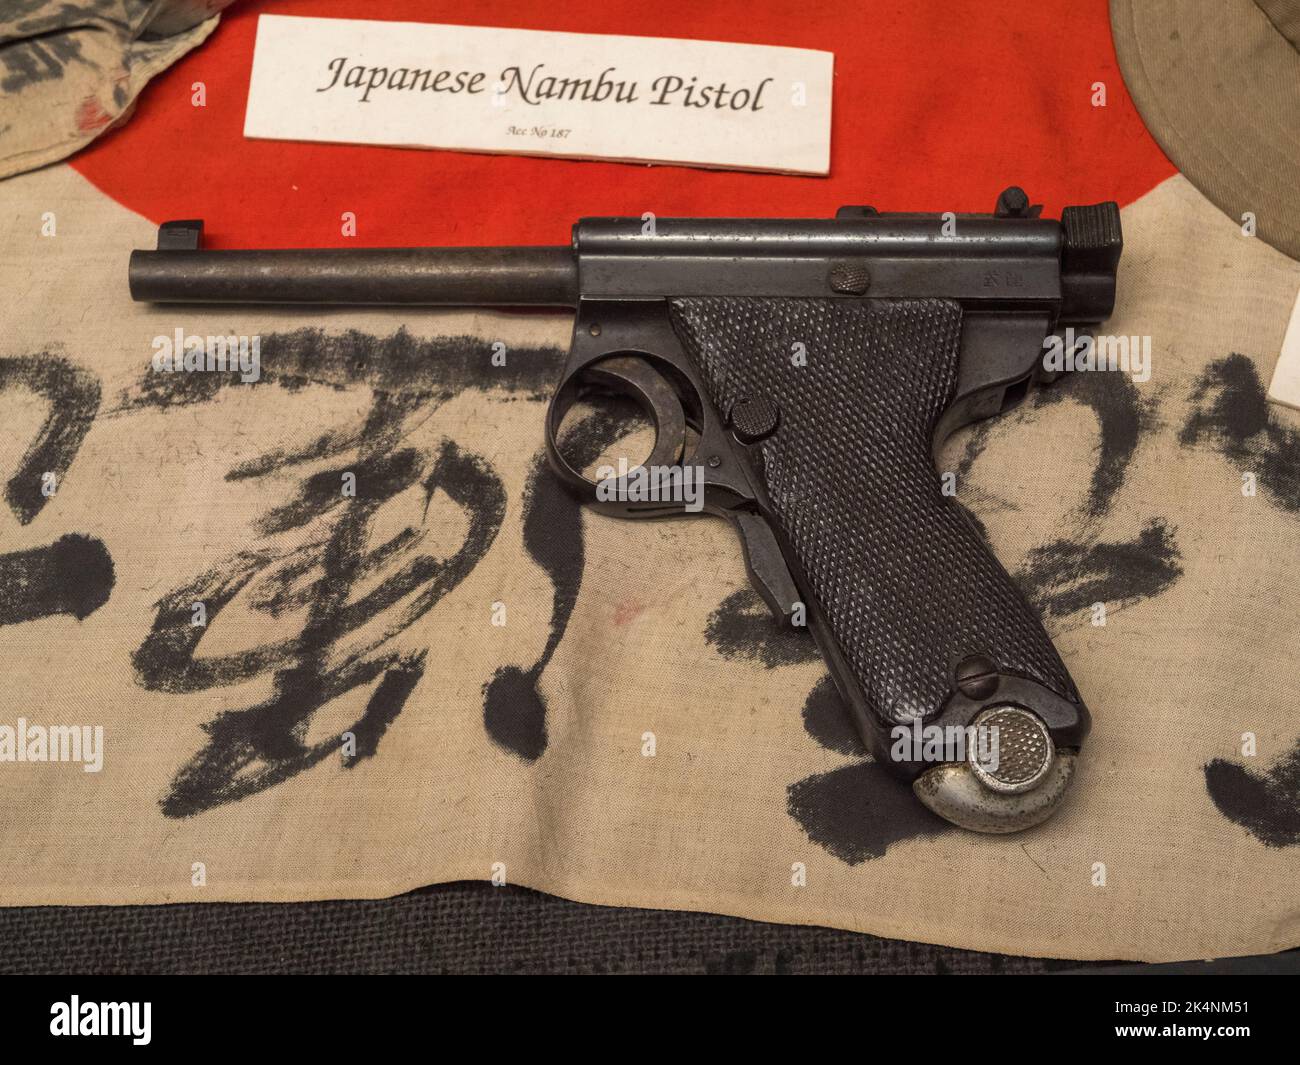 Una pistola giapponese Mabu in mostra nel Castello di dover, Kent, Regno Unito. Foto Stock